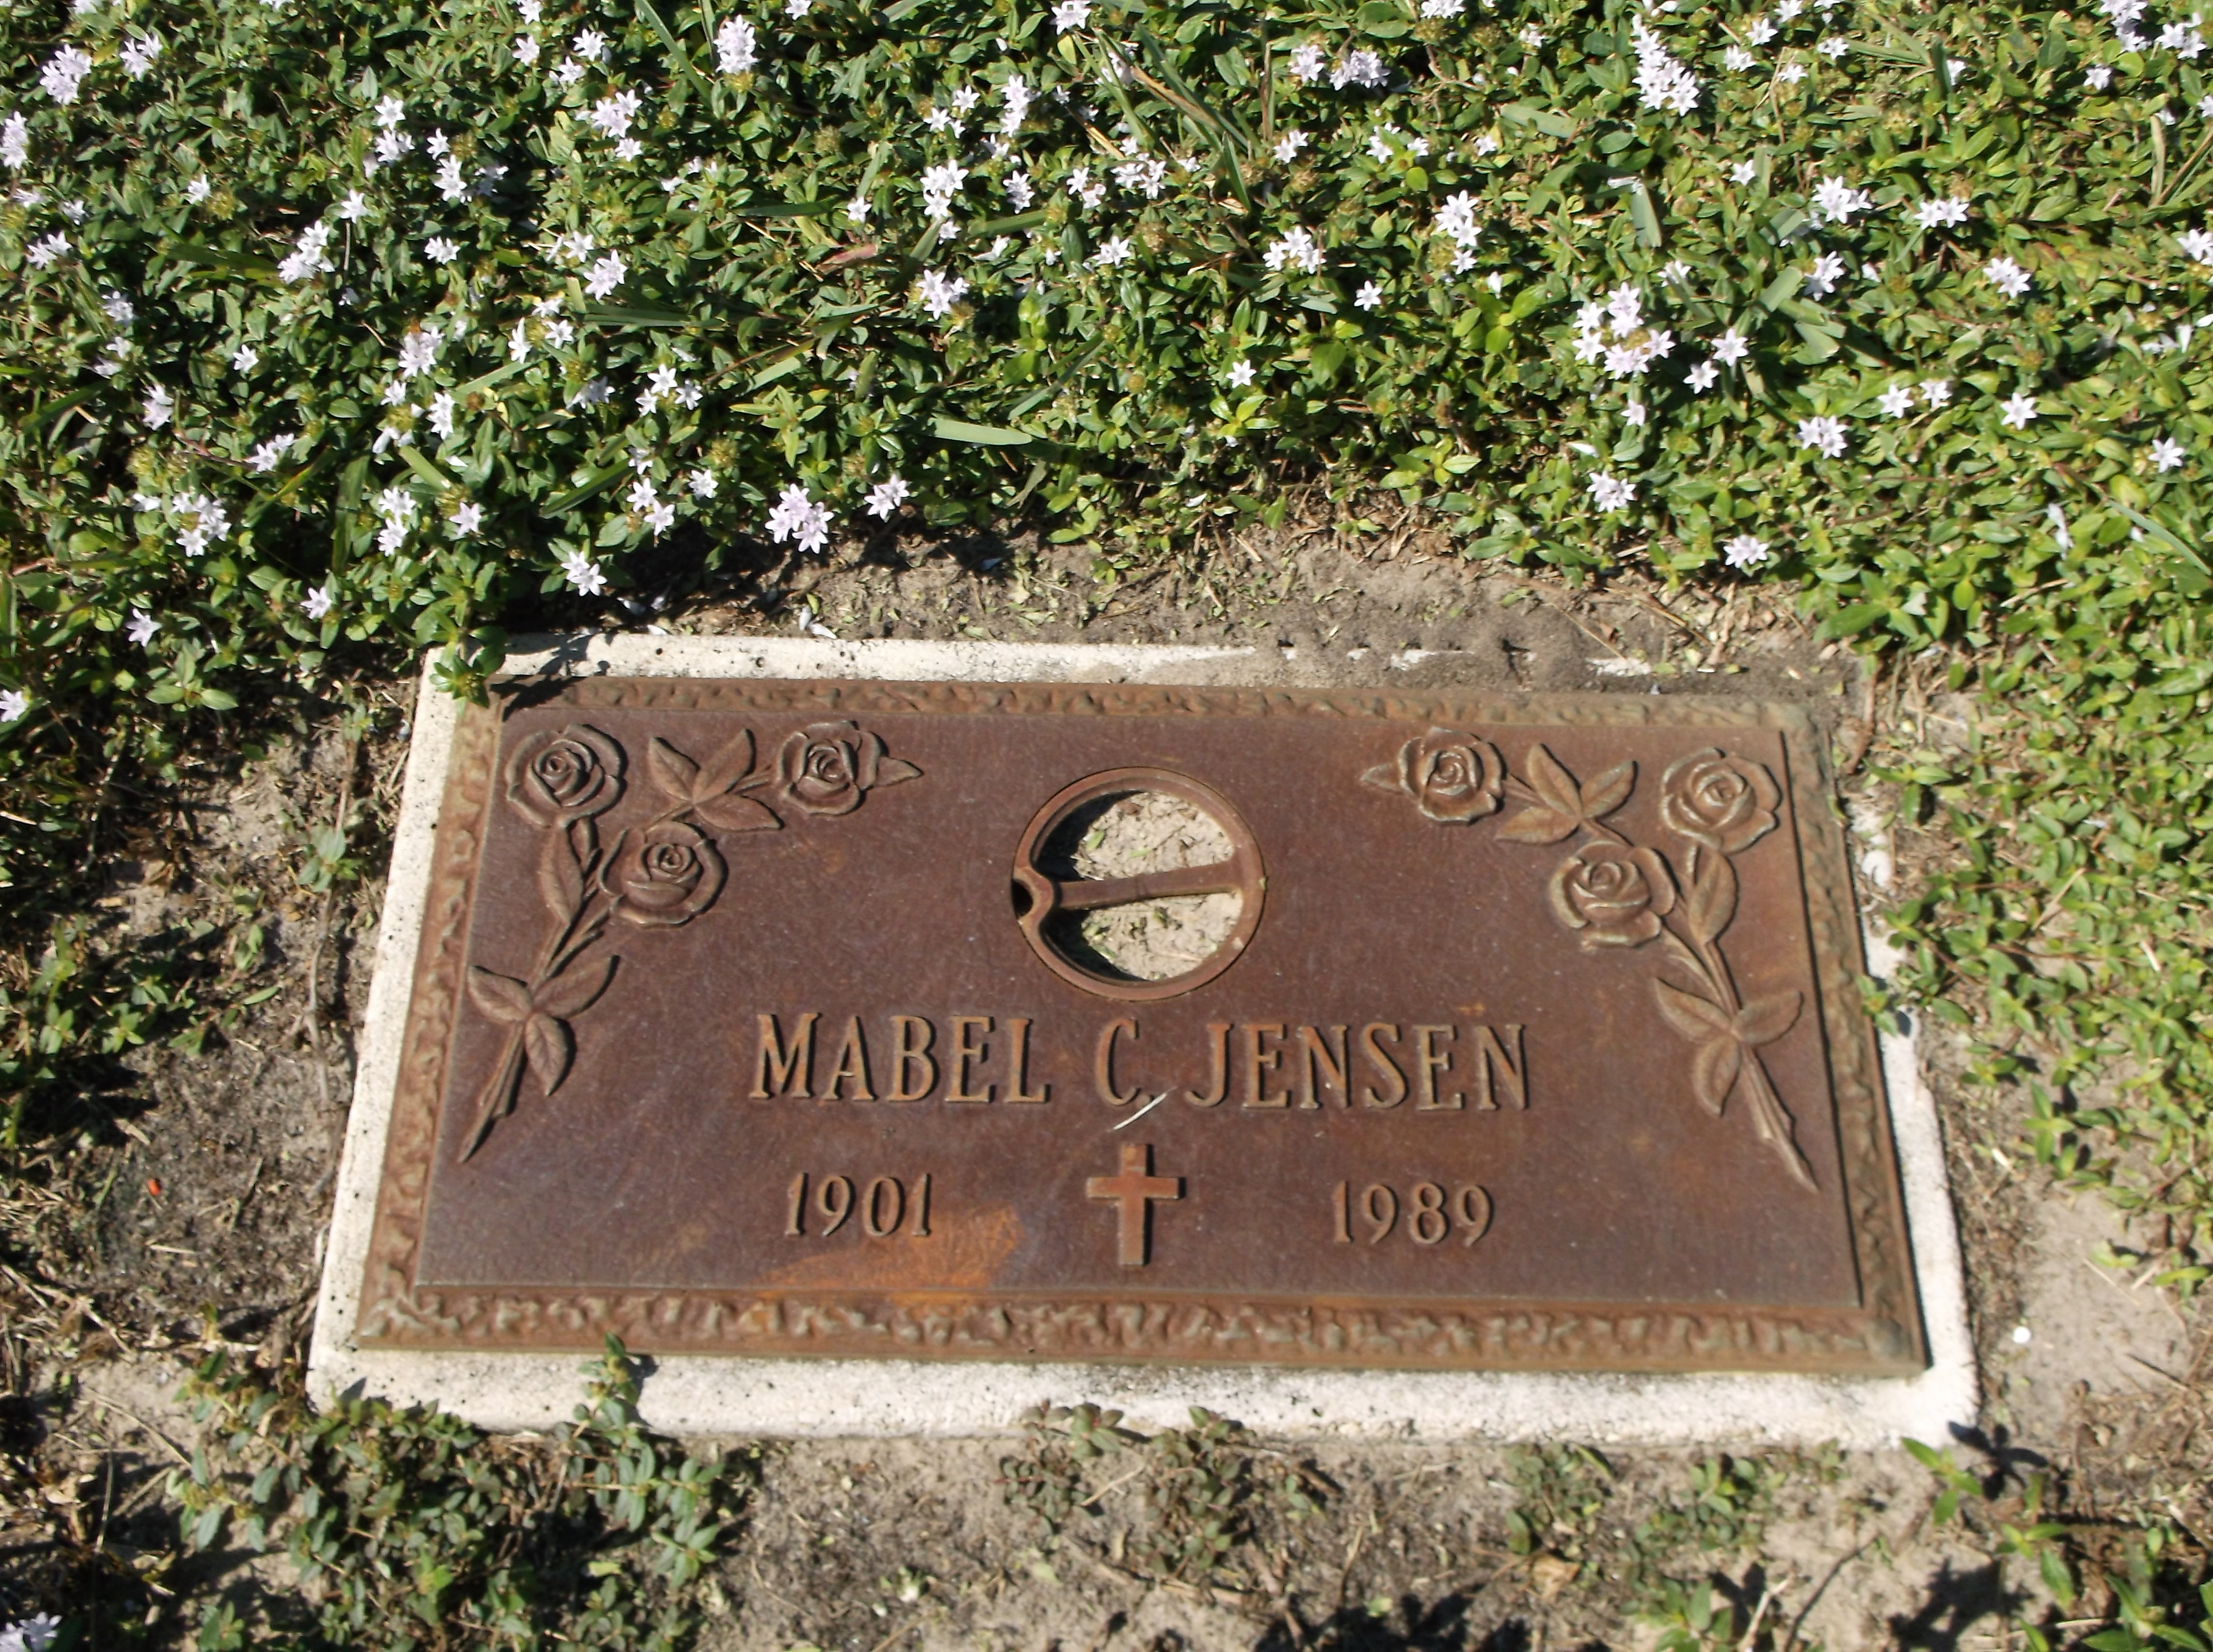 Mabel C Jensen